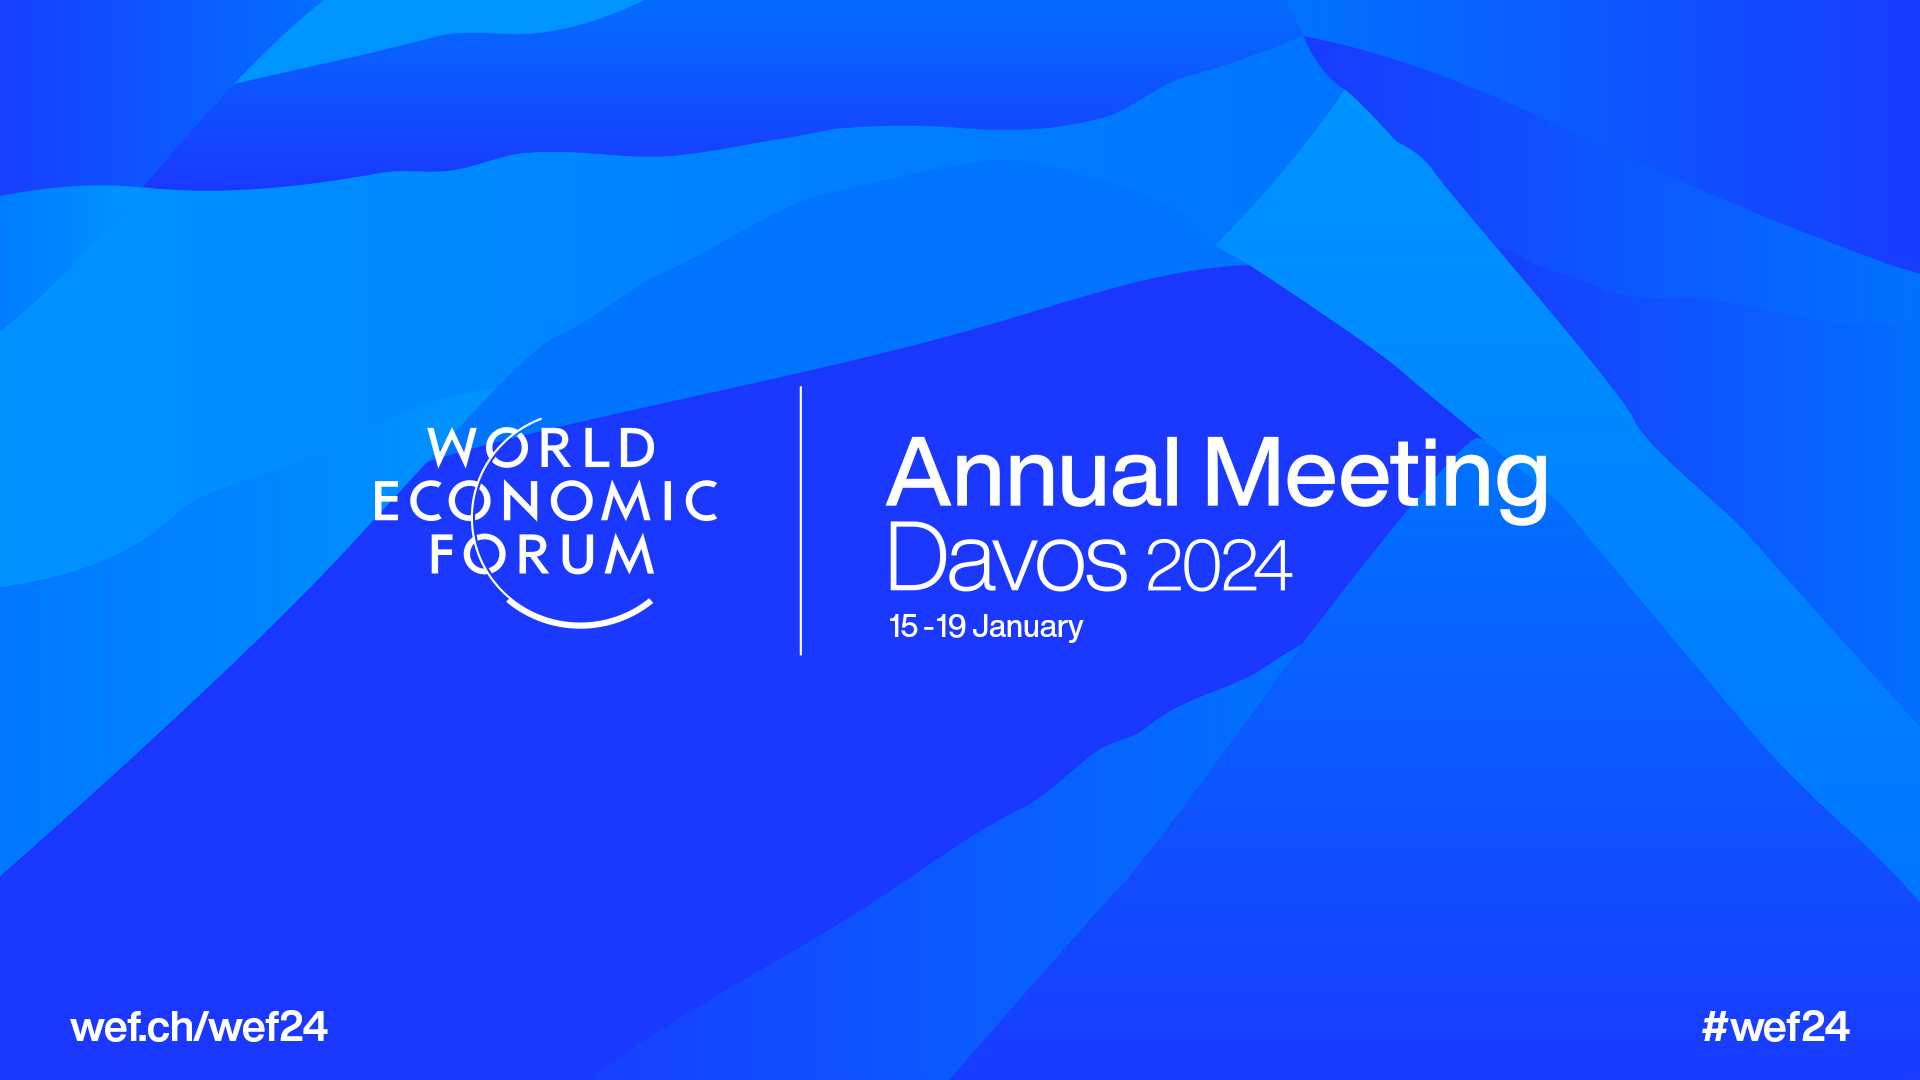 Da inicio el Foro Económico Mundial en Davos, Suiza; donde se reúnen lideres mundiales y empresariales de todo el mundo